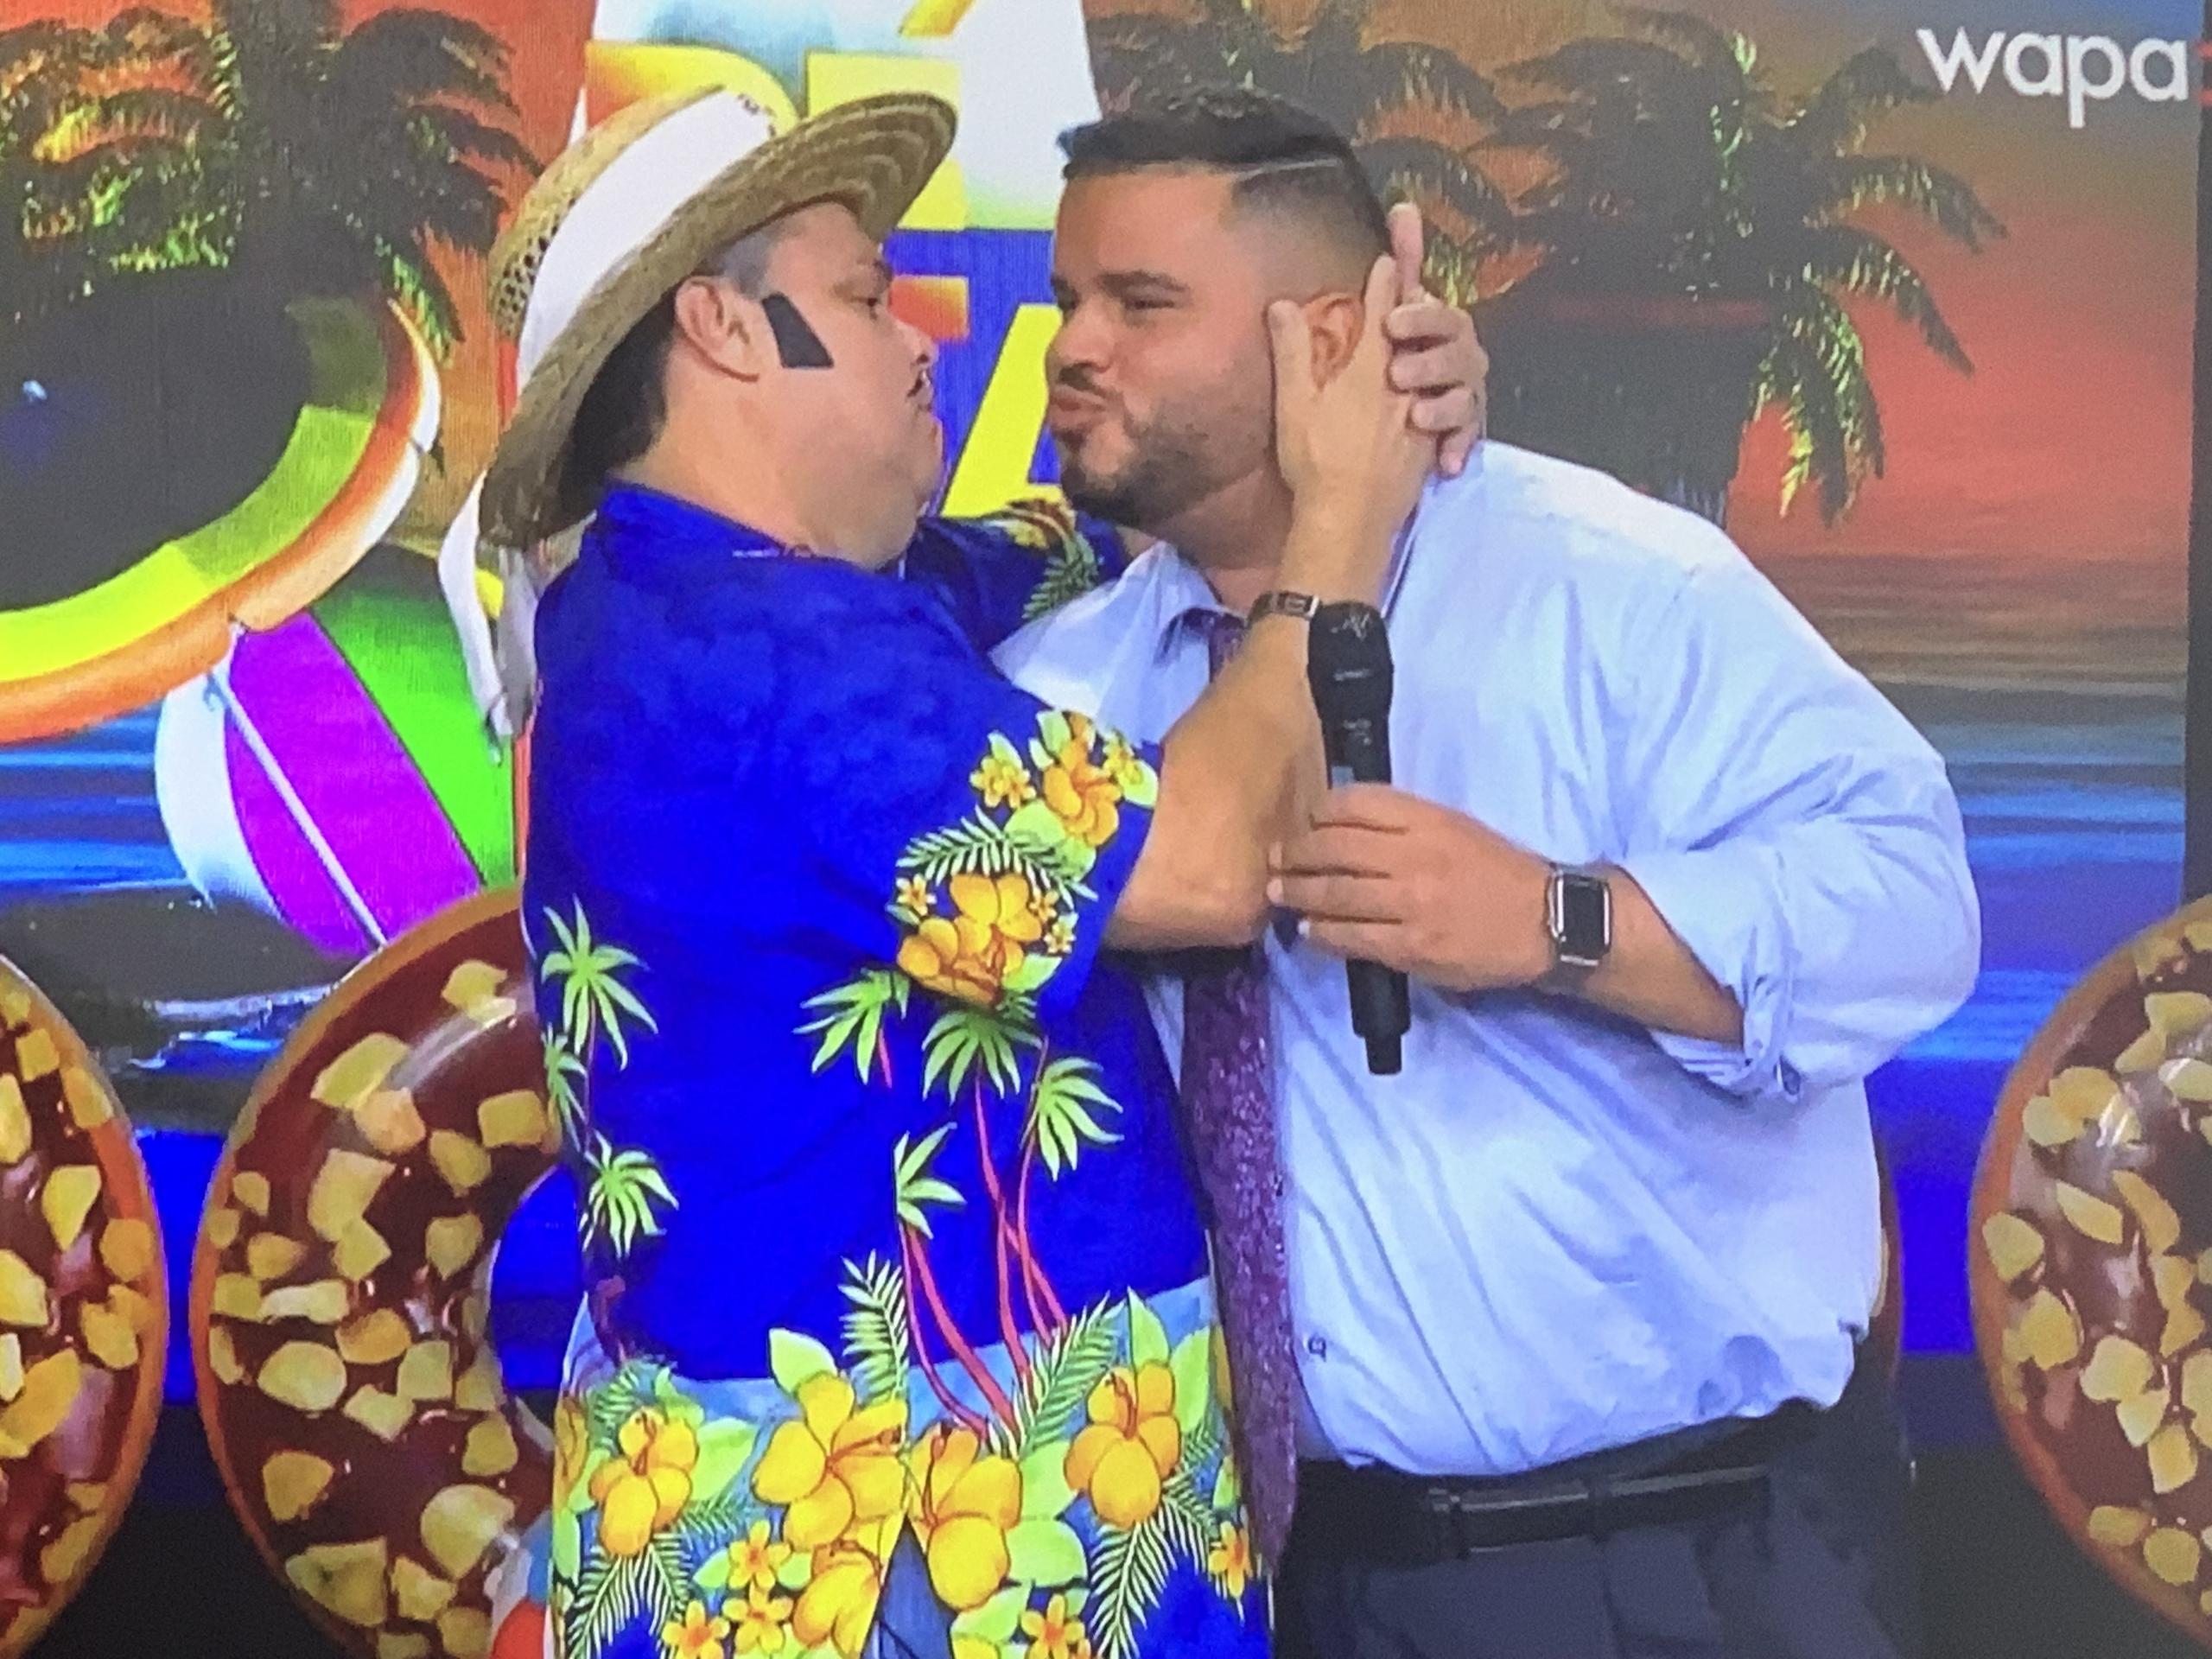 El analista político Jay Fonseca y el personaje de El Guitarreño intentan darse un beso en la mejilla tras zanjar sus diferencias ante las cámaras de Wapa TV.